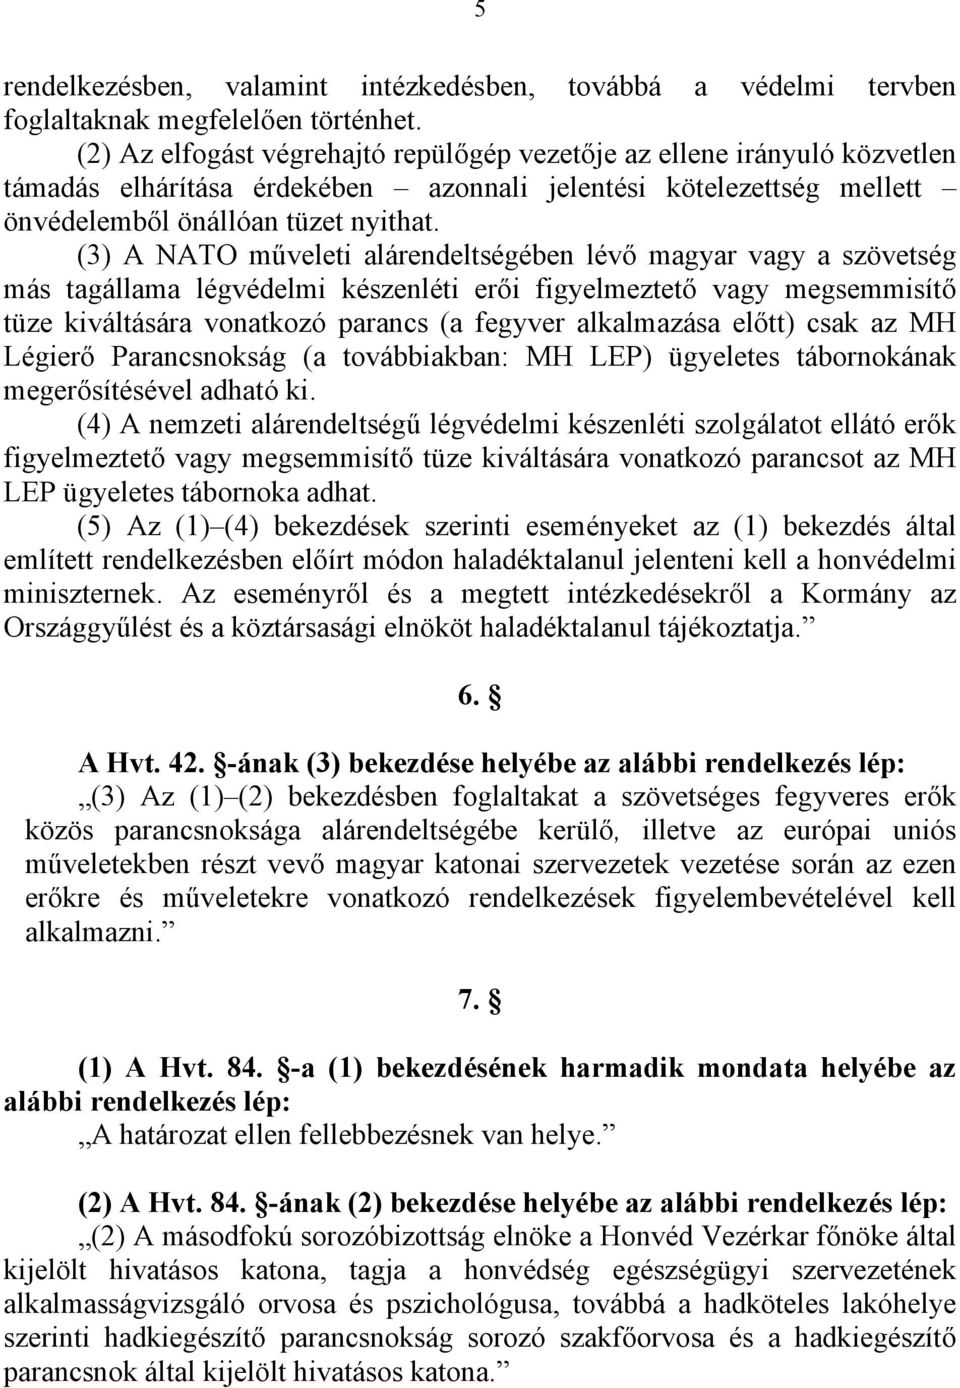 (3) A NATO műveleti alárendeltségében lévő magyar vagy a szövetség más tagállama légvédelmi készenléti erői figyelmeztető vagy megsemmisítő tüze kiváltására vonatkozó parancs (a fegyver alkalmazása